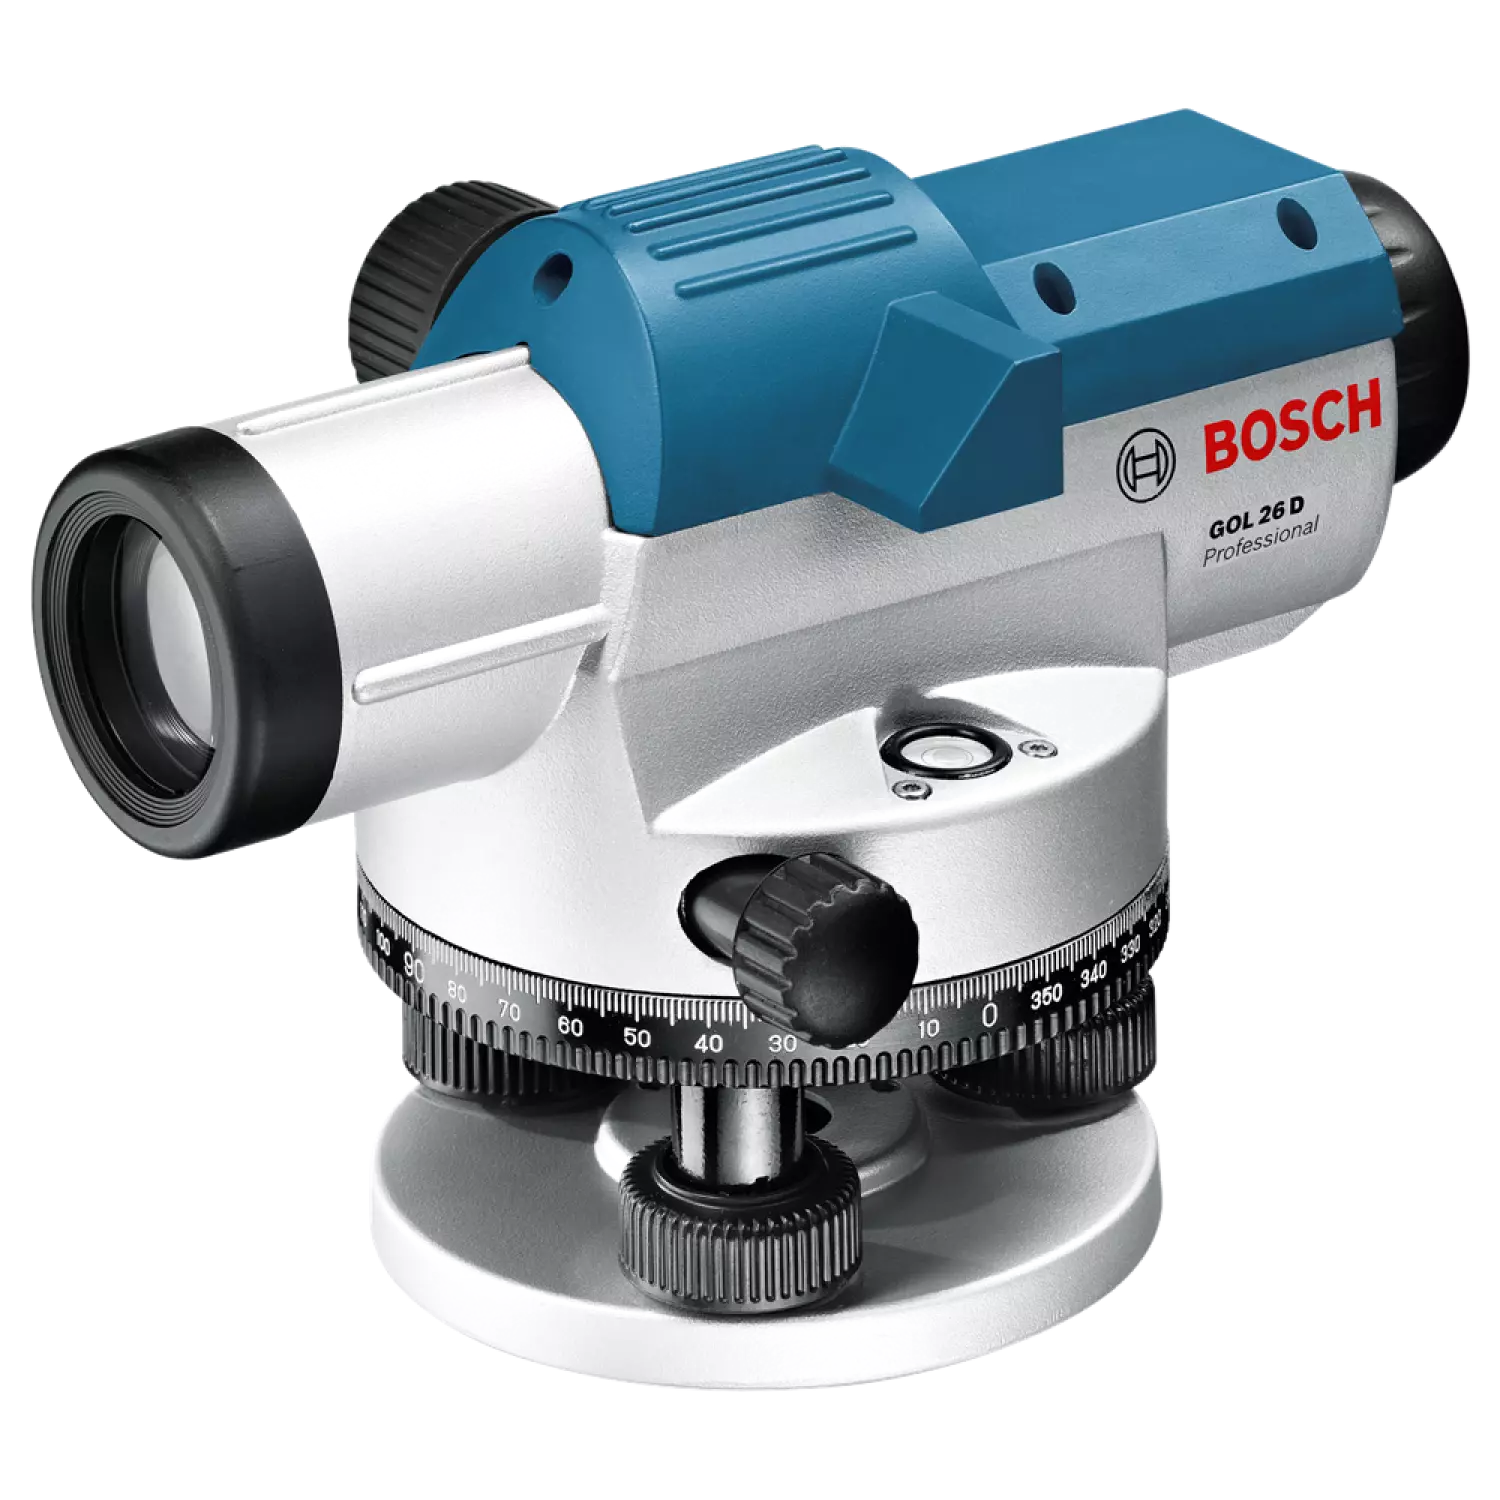 Bosch GOL 26 D Optisch waterpastoestel met vergrotingsfactor - 100mm - in koffer + BT 160 Bouwstatief - 160cm + GR 500 Meetlat 5M